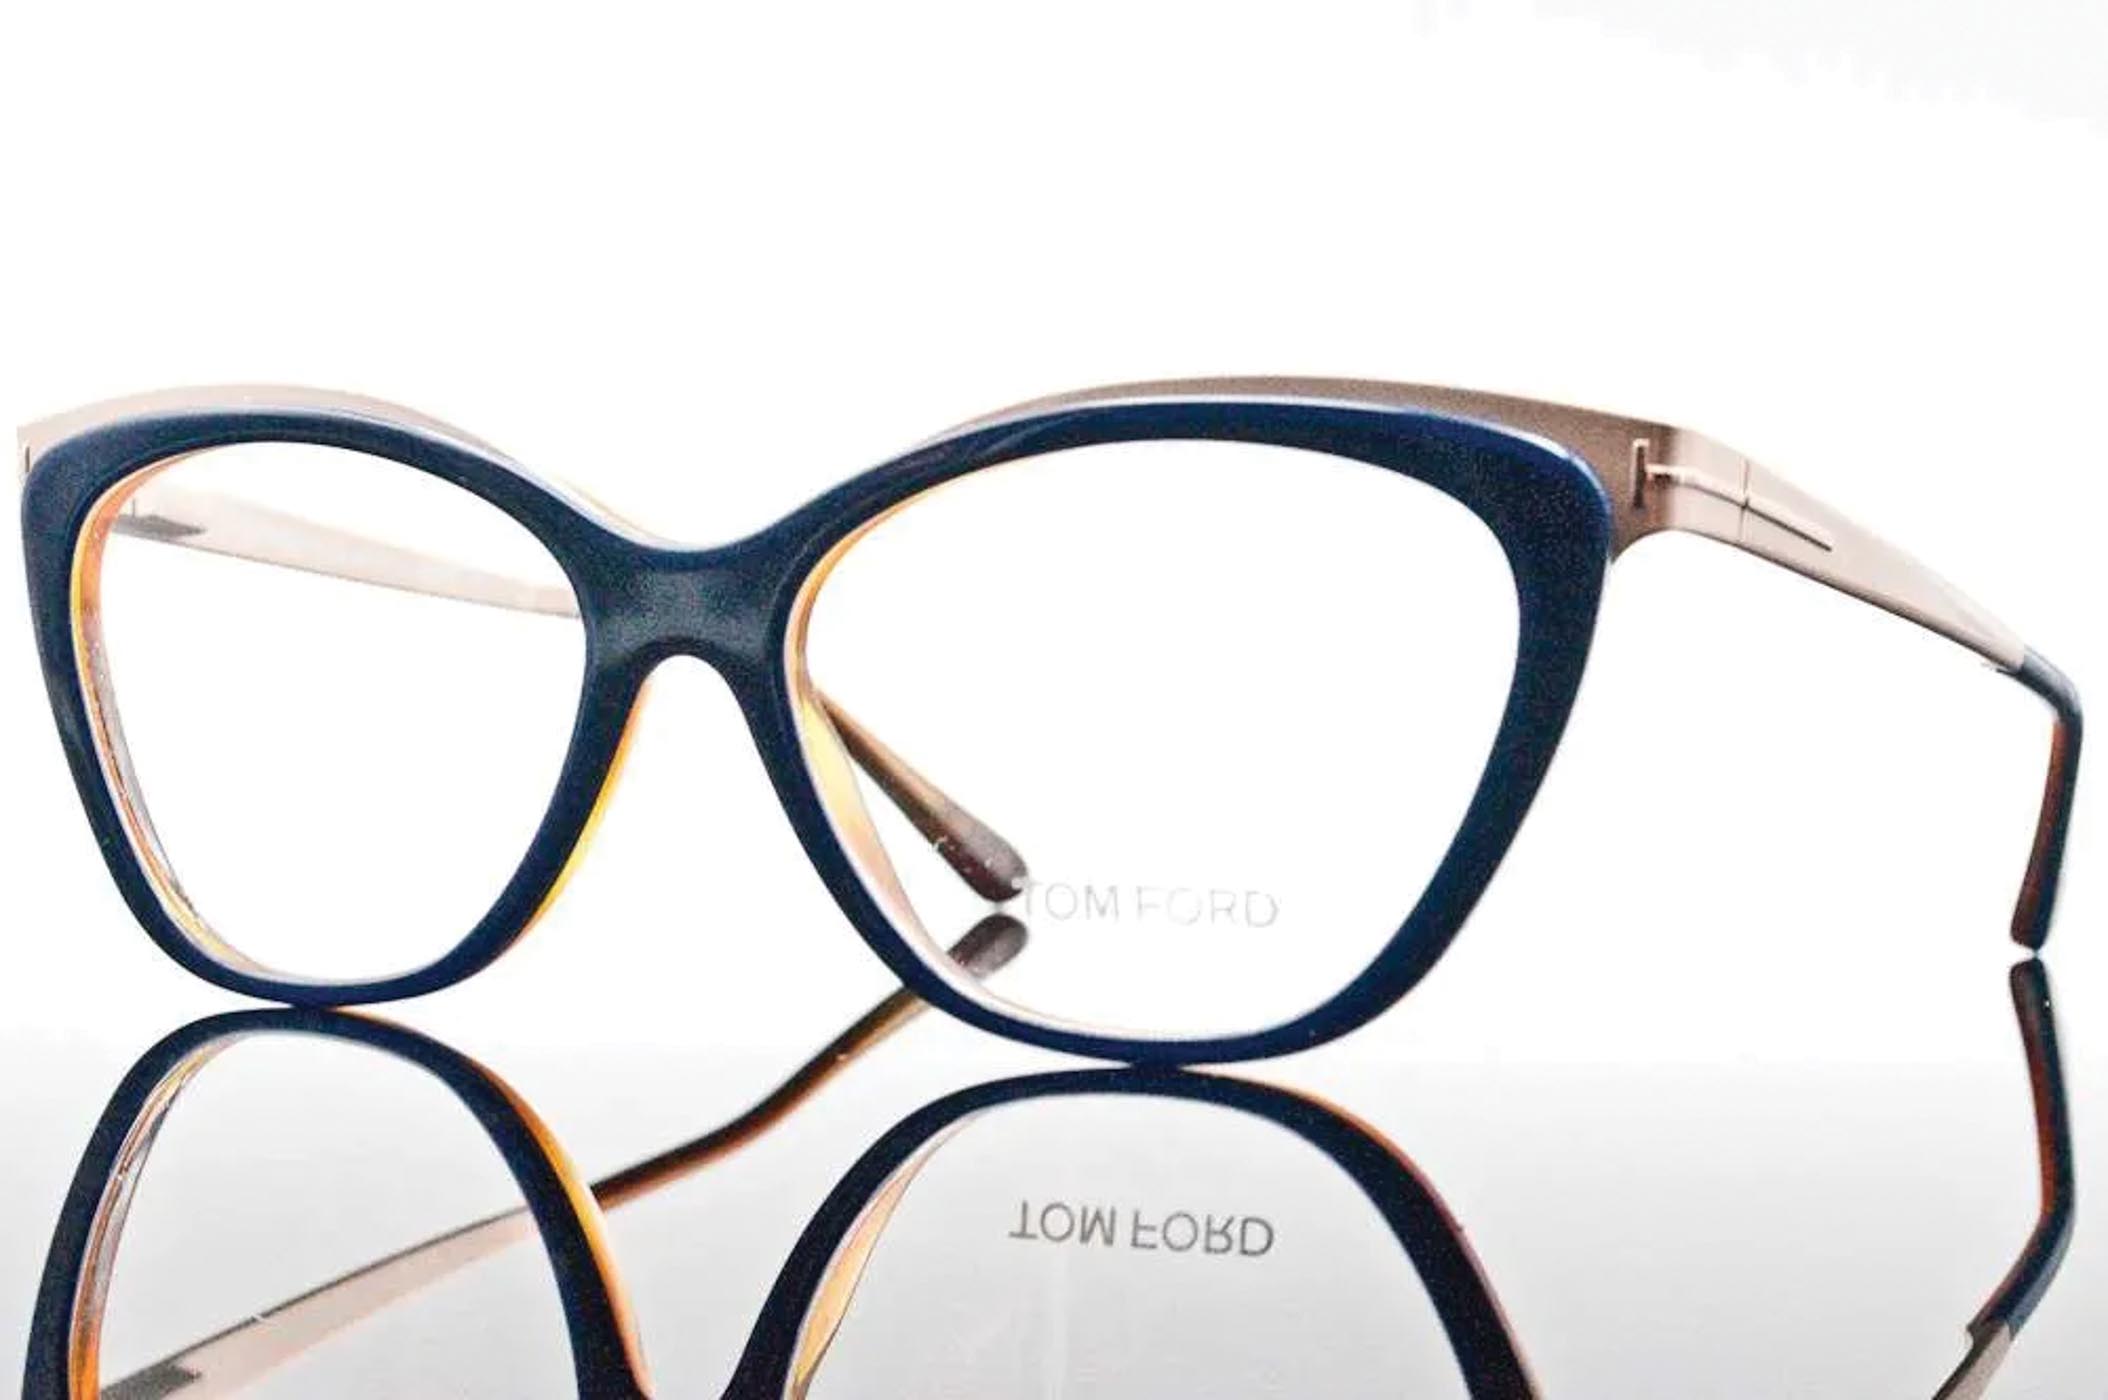 36 Tom Ford Eyeglasses $490.00 Blinkoptic.com